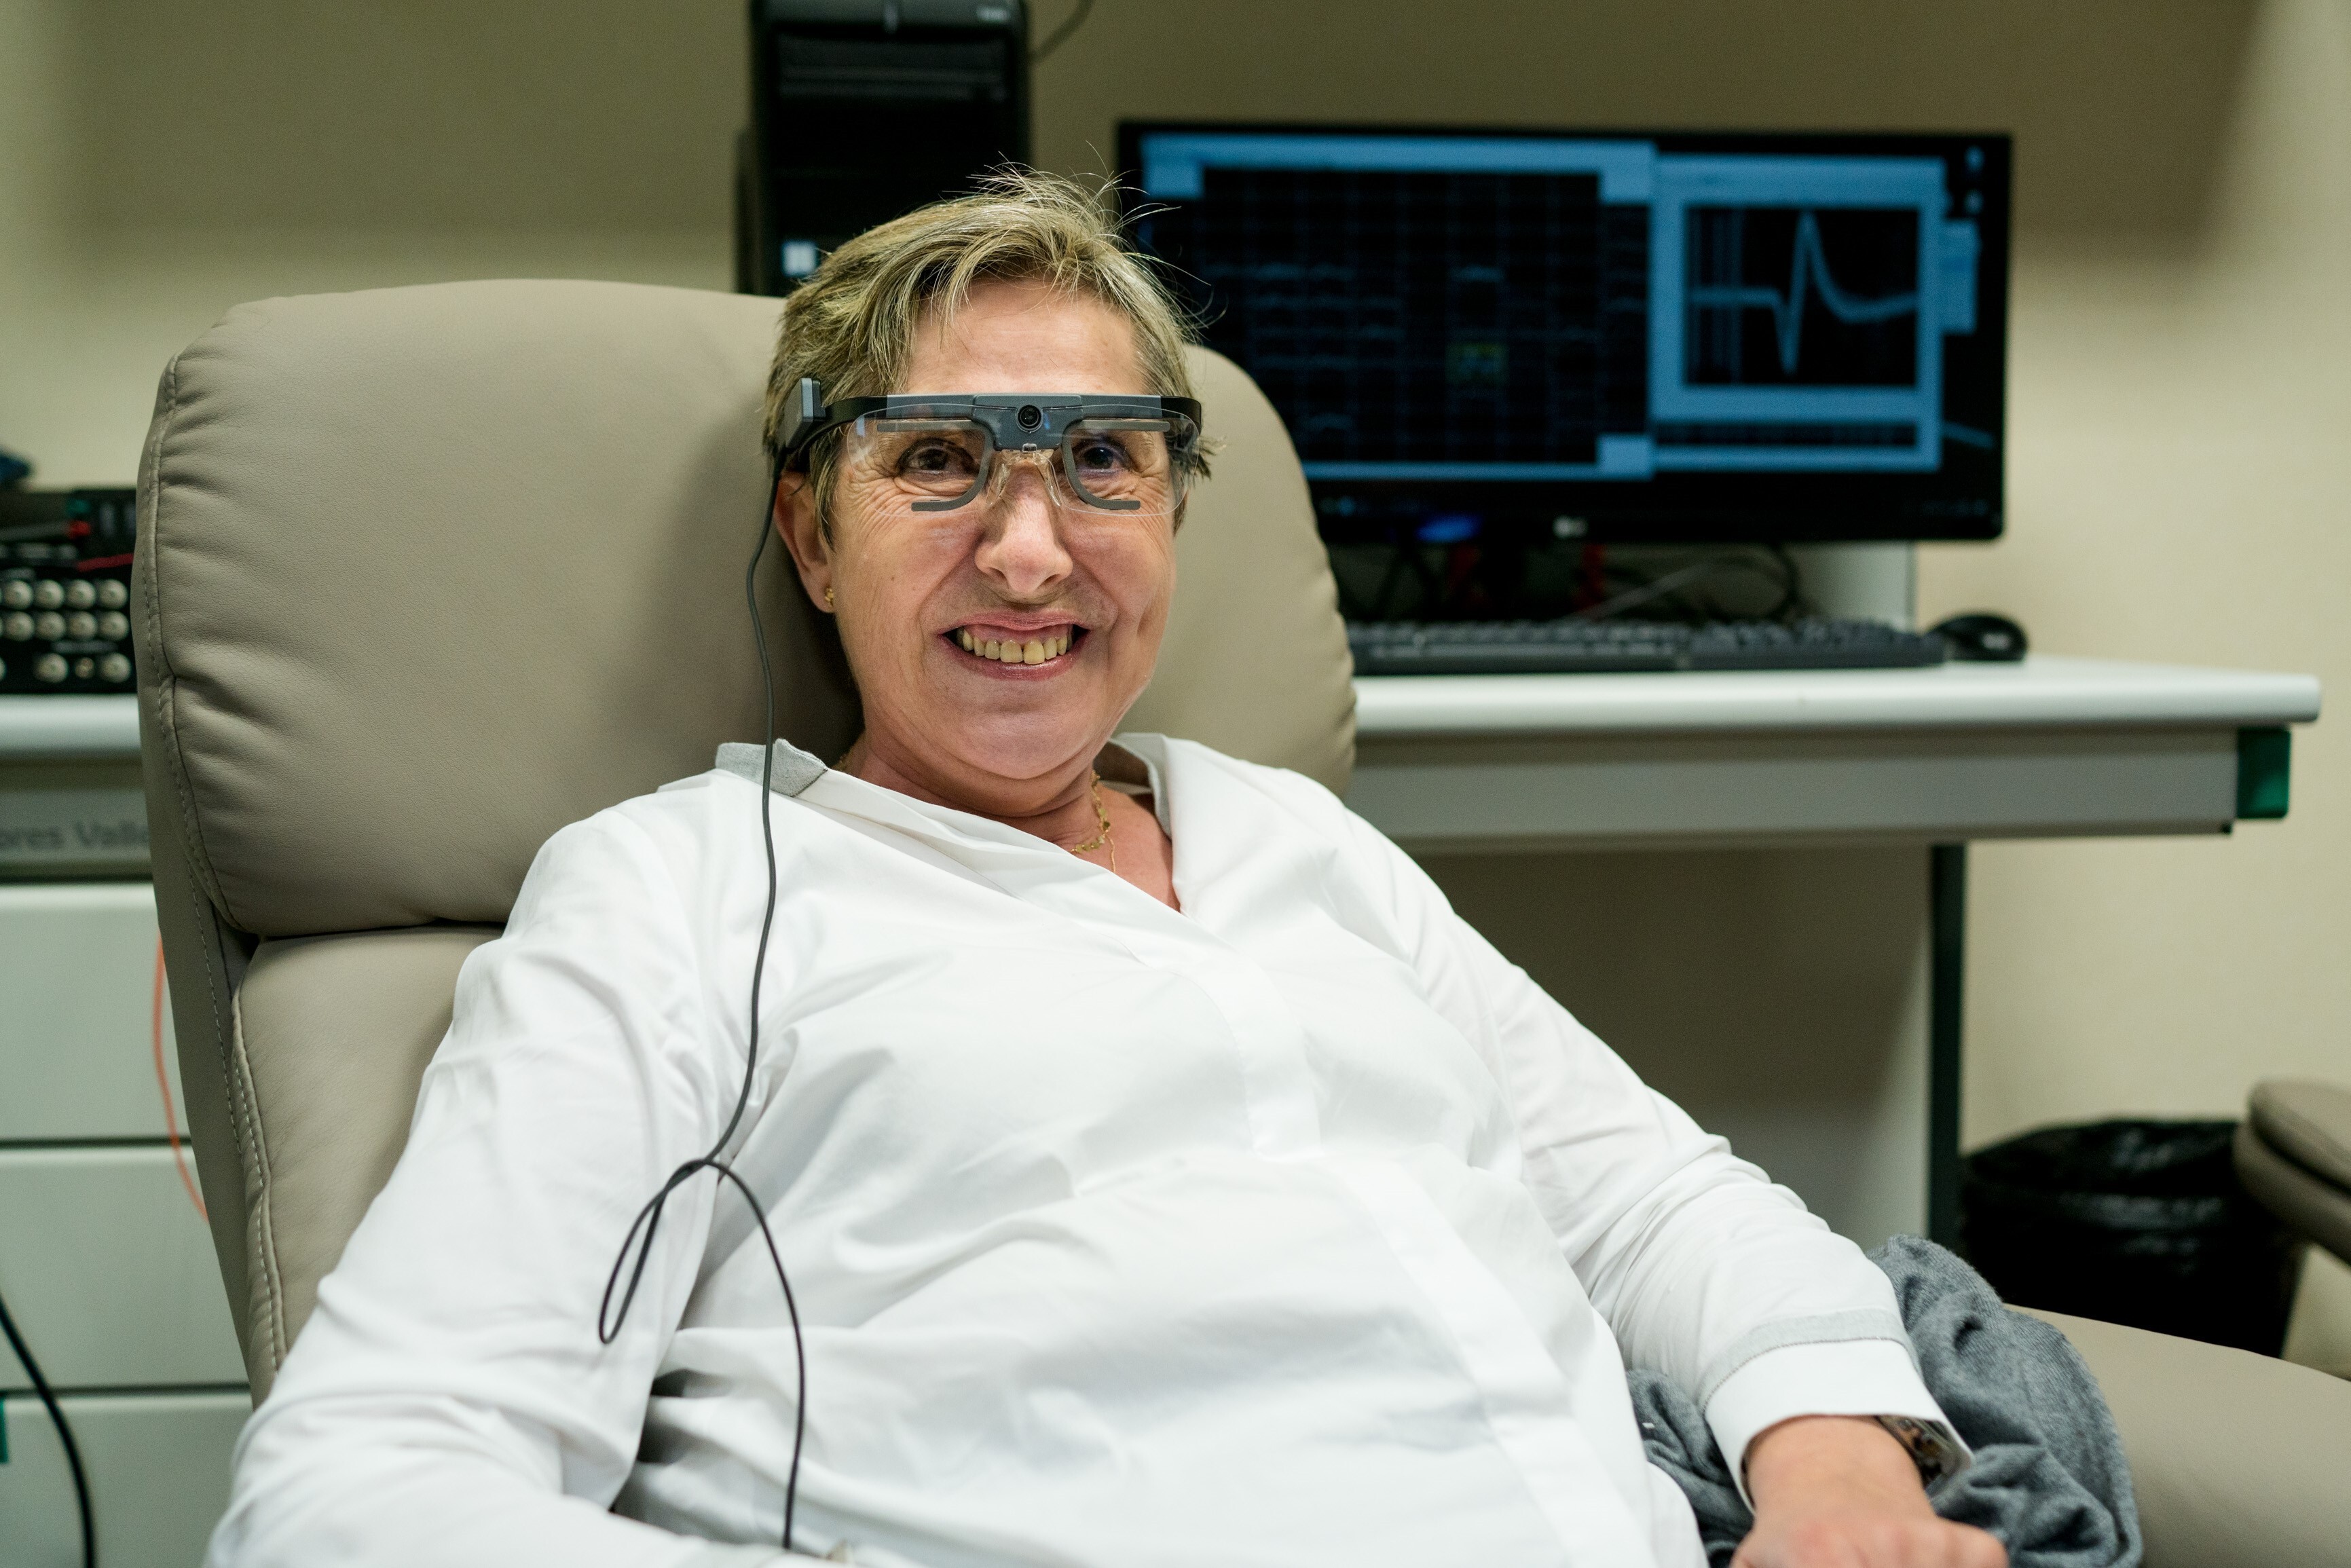 Implante cerebral para recuperar la visión. Universidad Miguel Hernández, de Elche